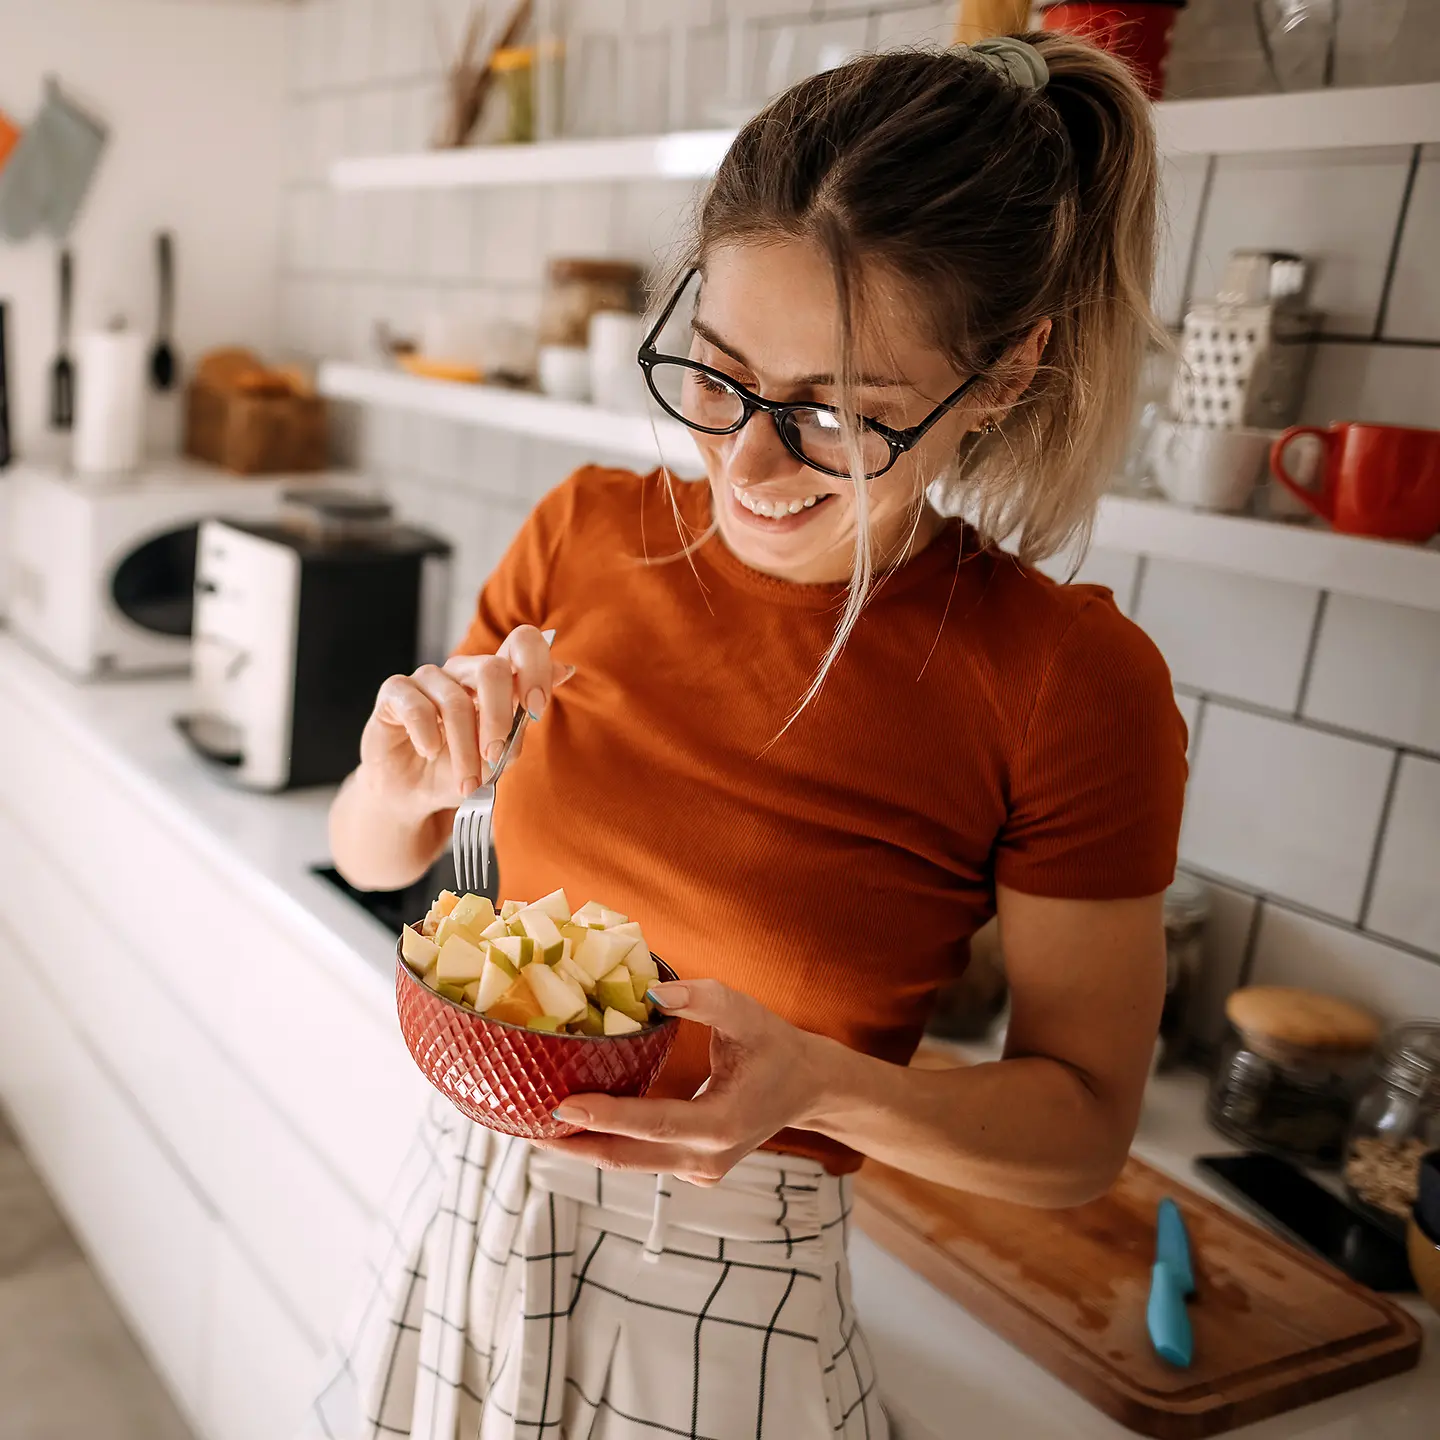 Eine junge Frau steht in ihrer Küche und hält einen Obstsalat in der Hand